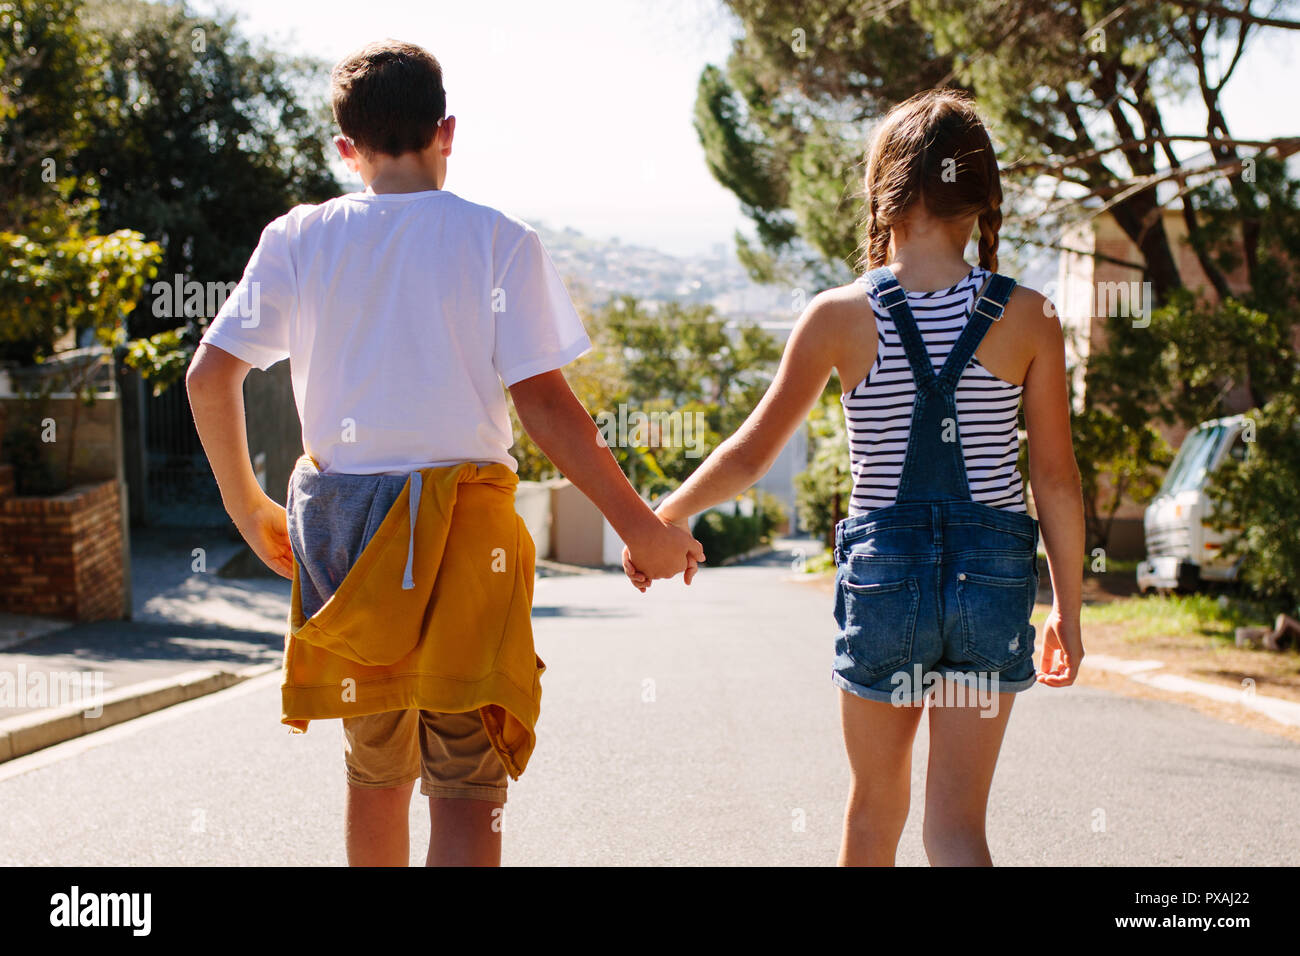 Kinder in der Liebe zu Fuß auf einer Straße, die Hand in Hand an einem sonnigen Tag. Junge und Mädchen zu Fuß auf einer verlassenen Straße zusammen. Stockfoto